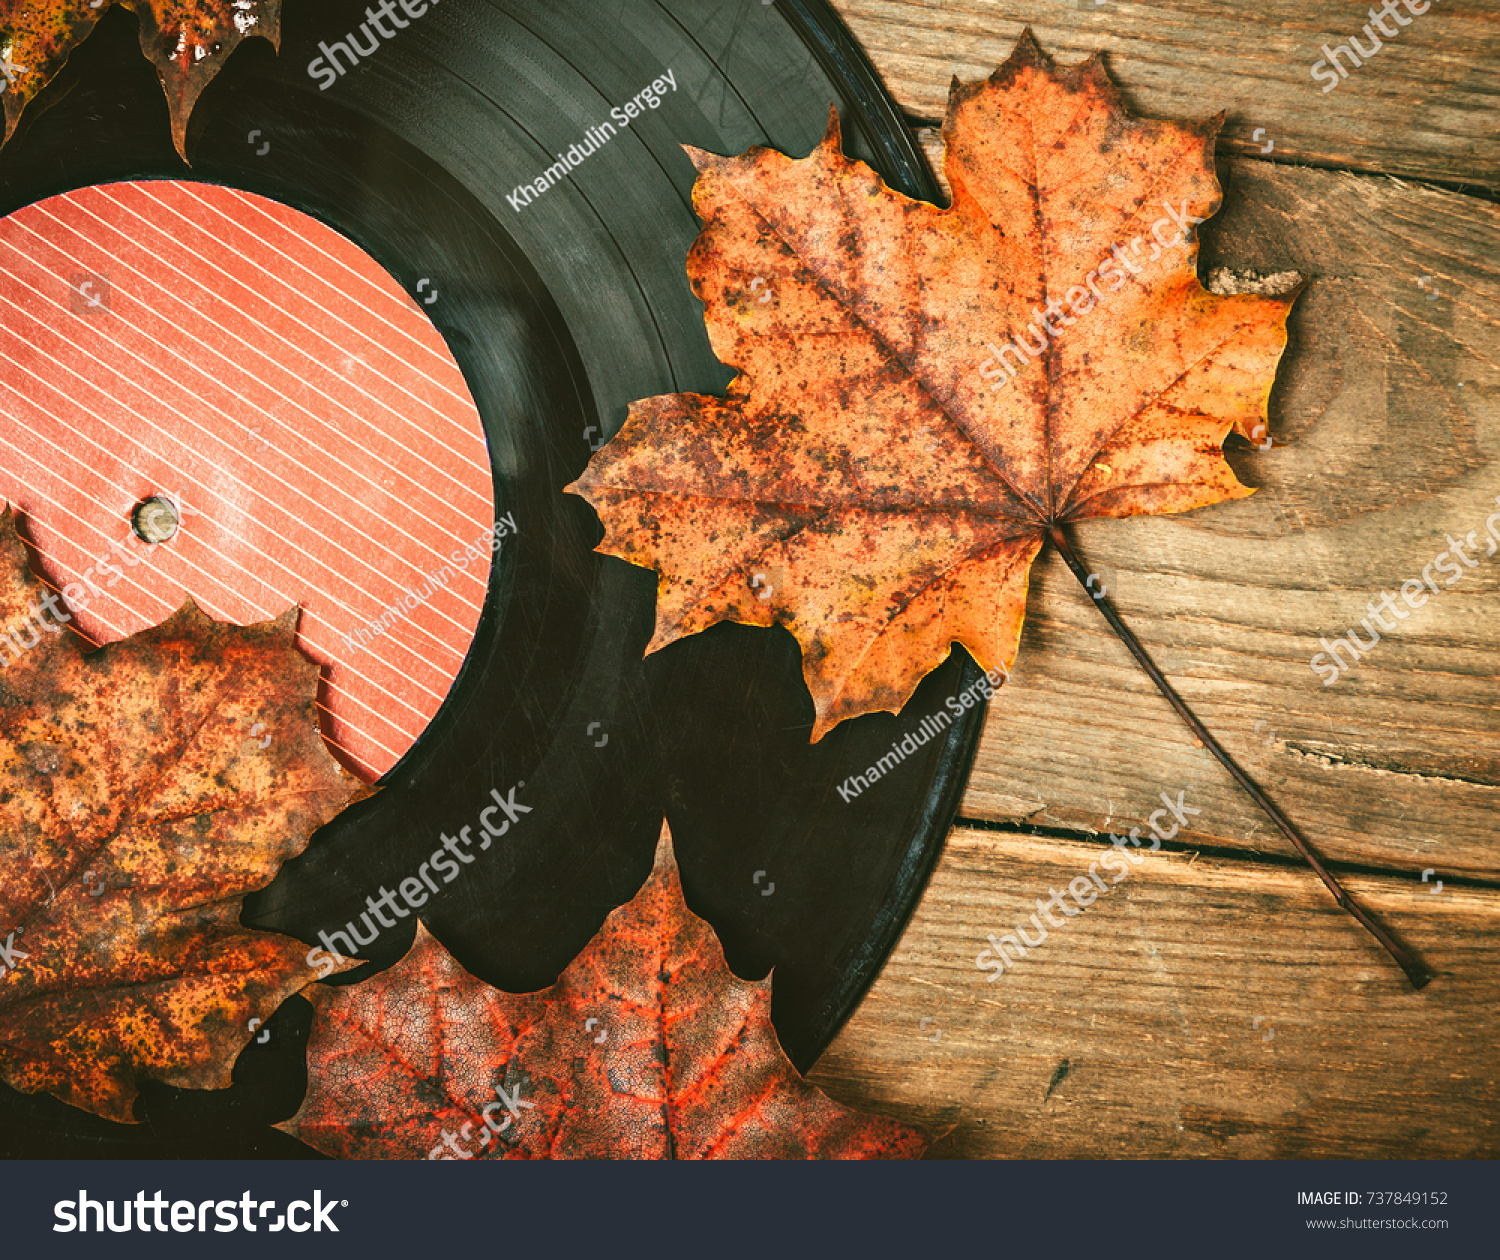 Gramplastine on fallen autumn foliage. #737849152